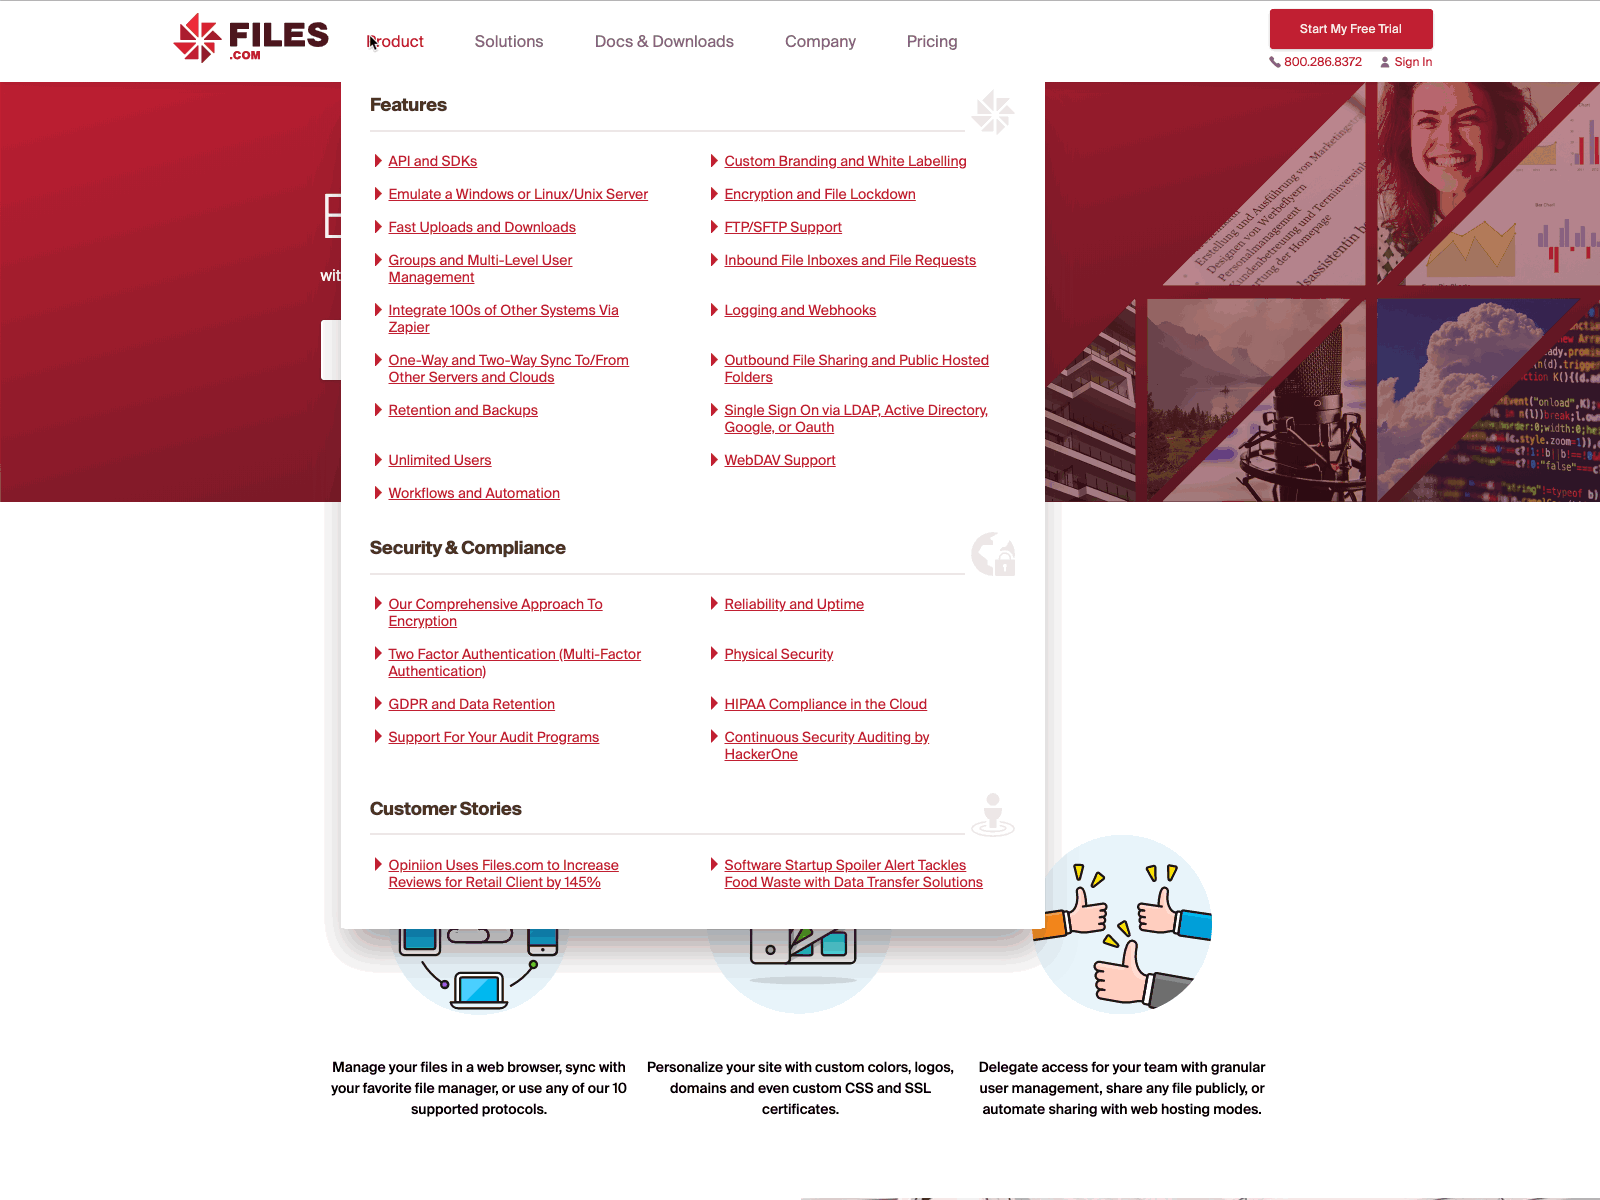 Files.com top level navigation javascript menu navigation ui